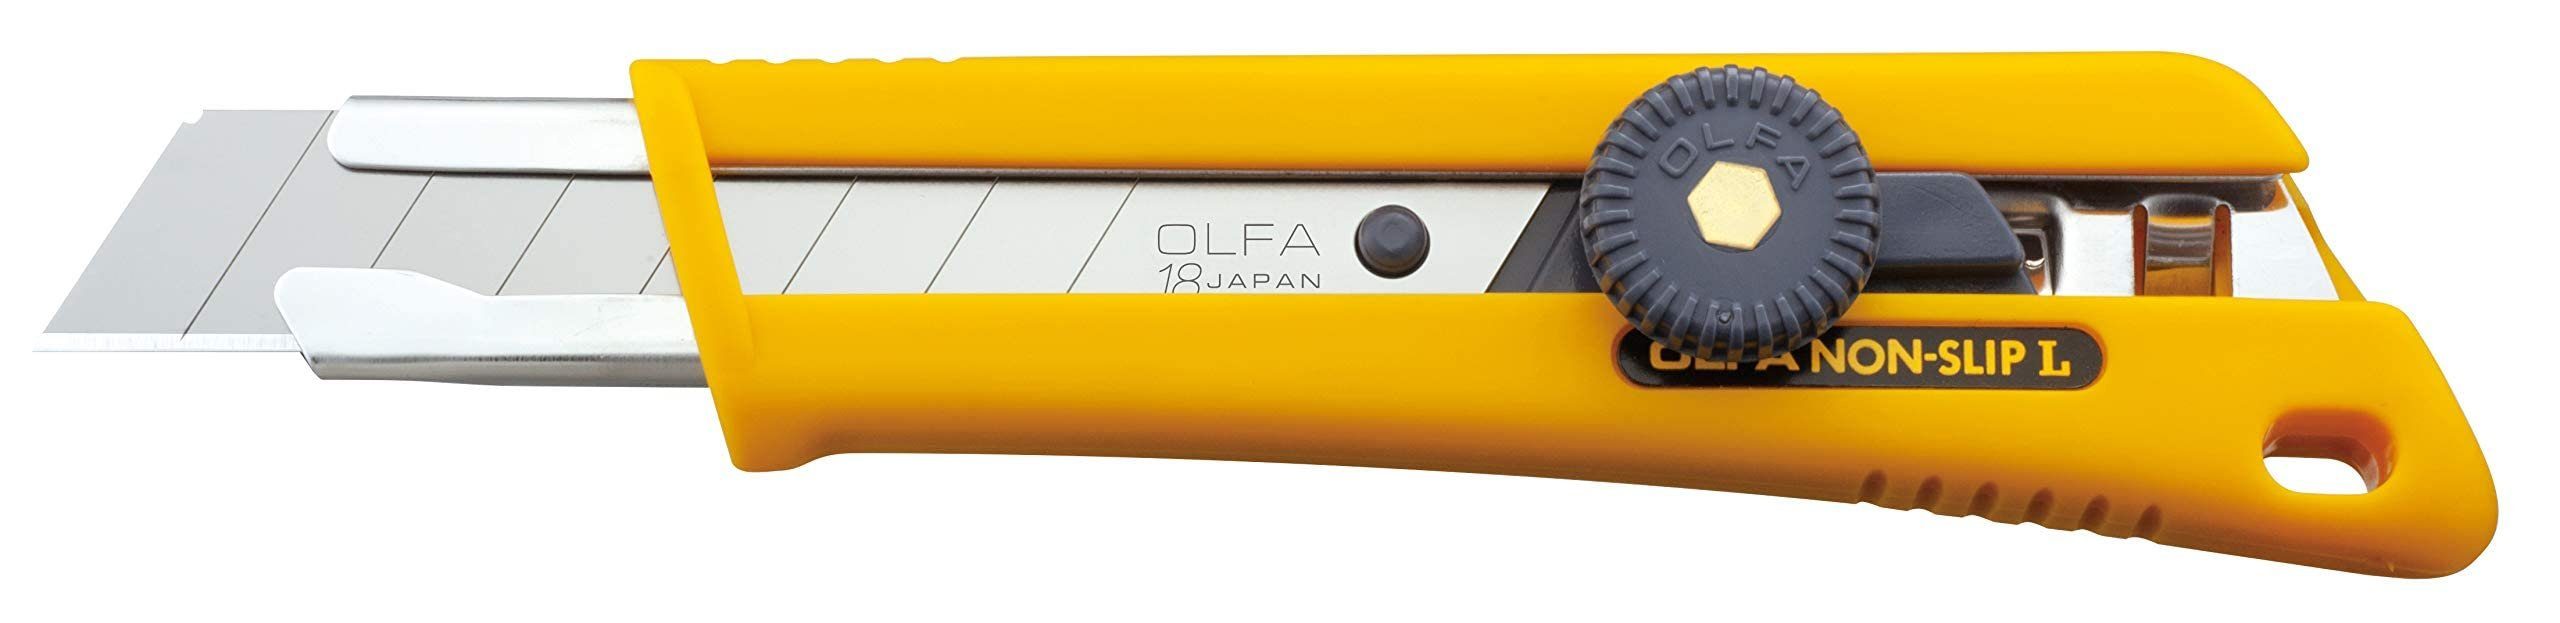 Olfa Cutter OLFA rutschfestes NOL-1 18mm Cuttermesser